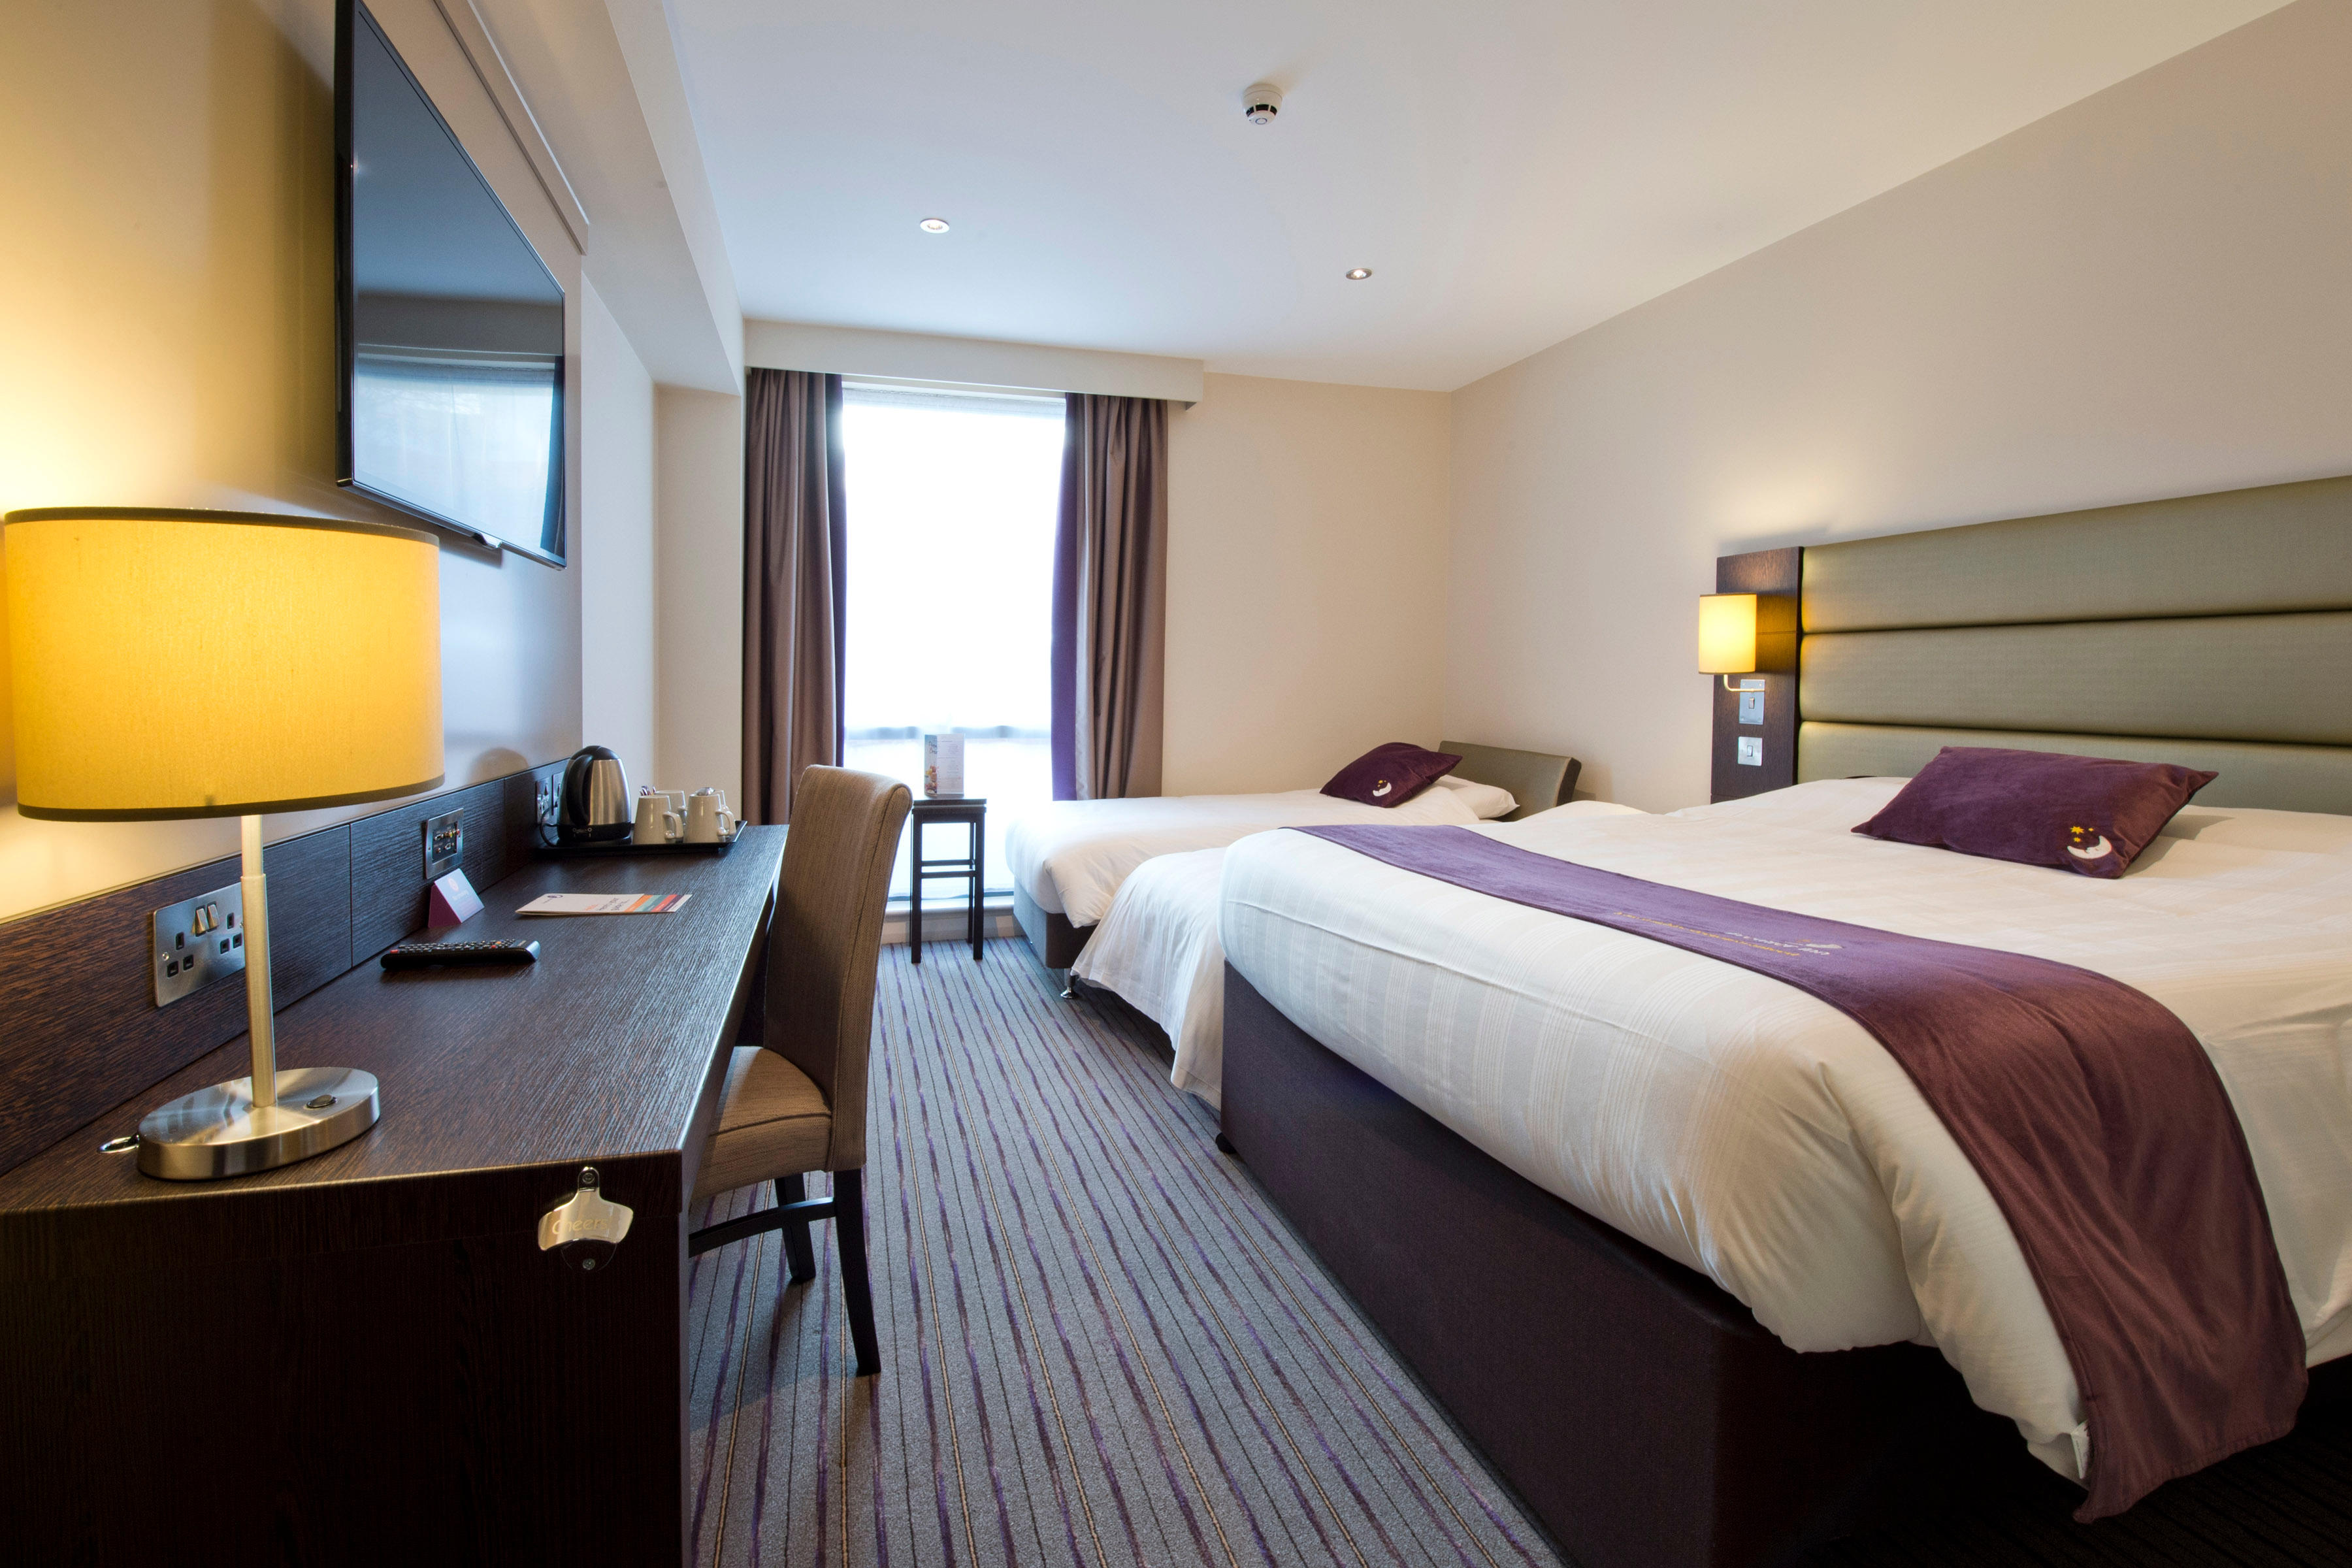 Premier Inn bedroom Premier Inn Sunderland City Centre hotel Sunderland 03330 037893